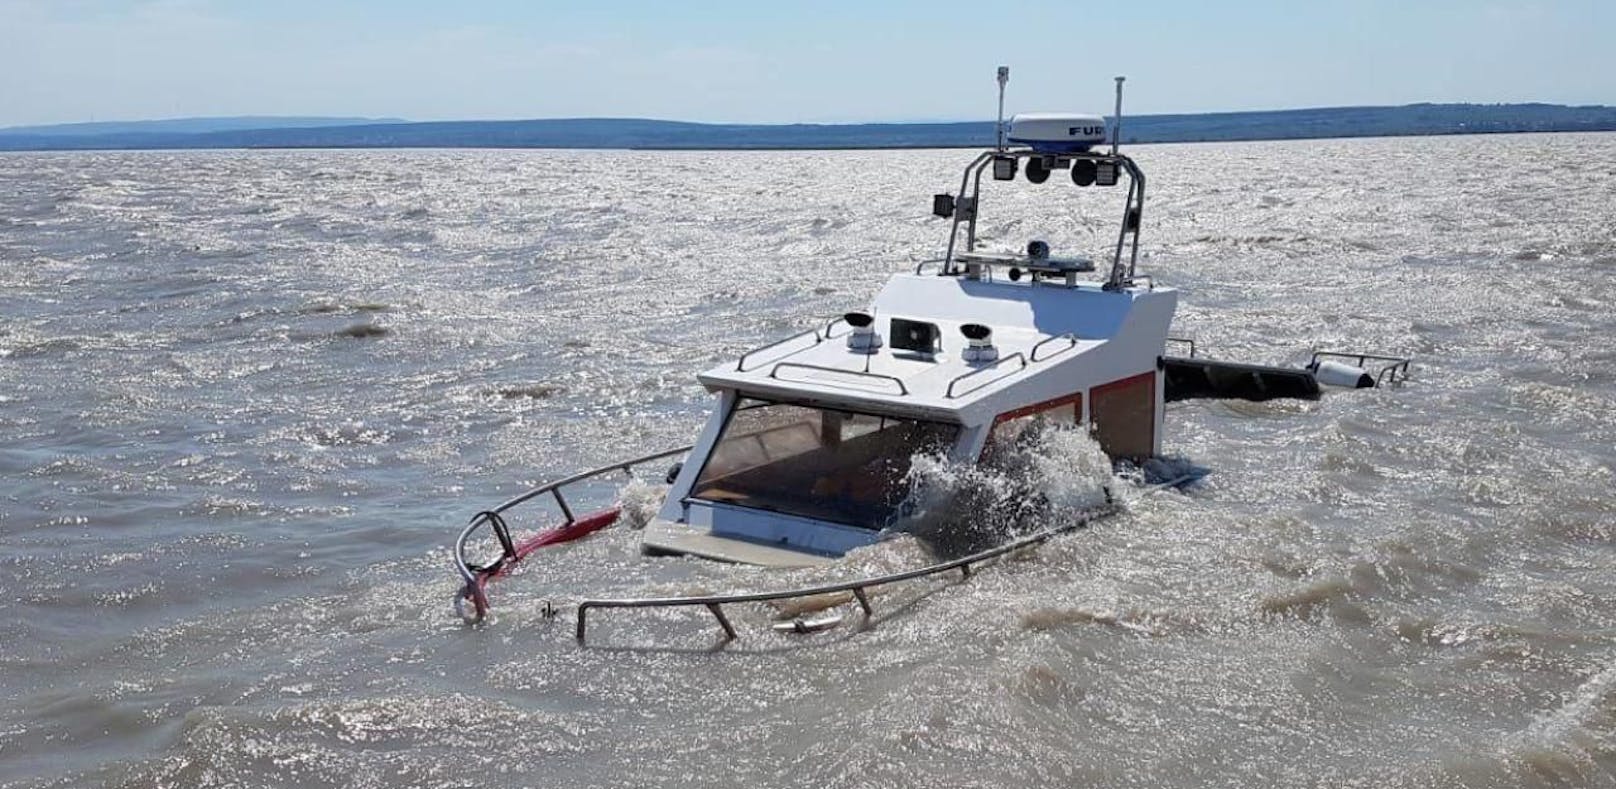 Feuerwehrboot läuft bei Probefahrt auf Grund